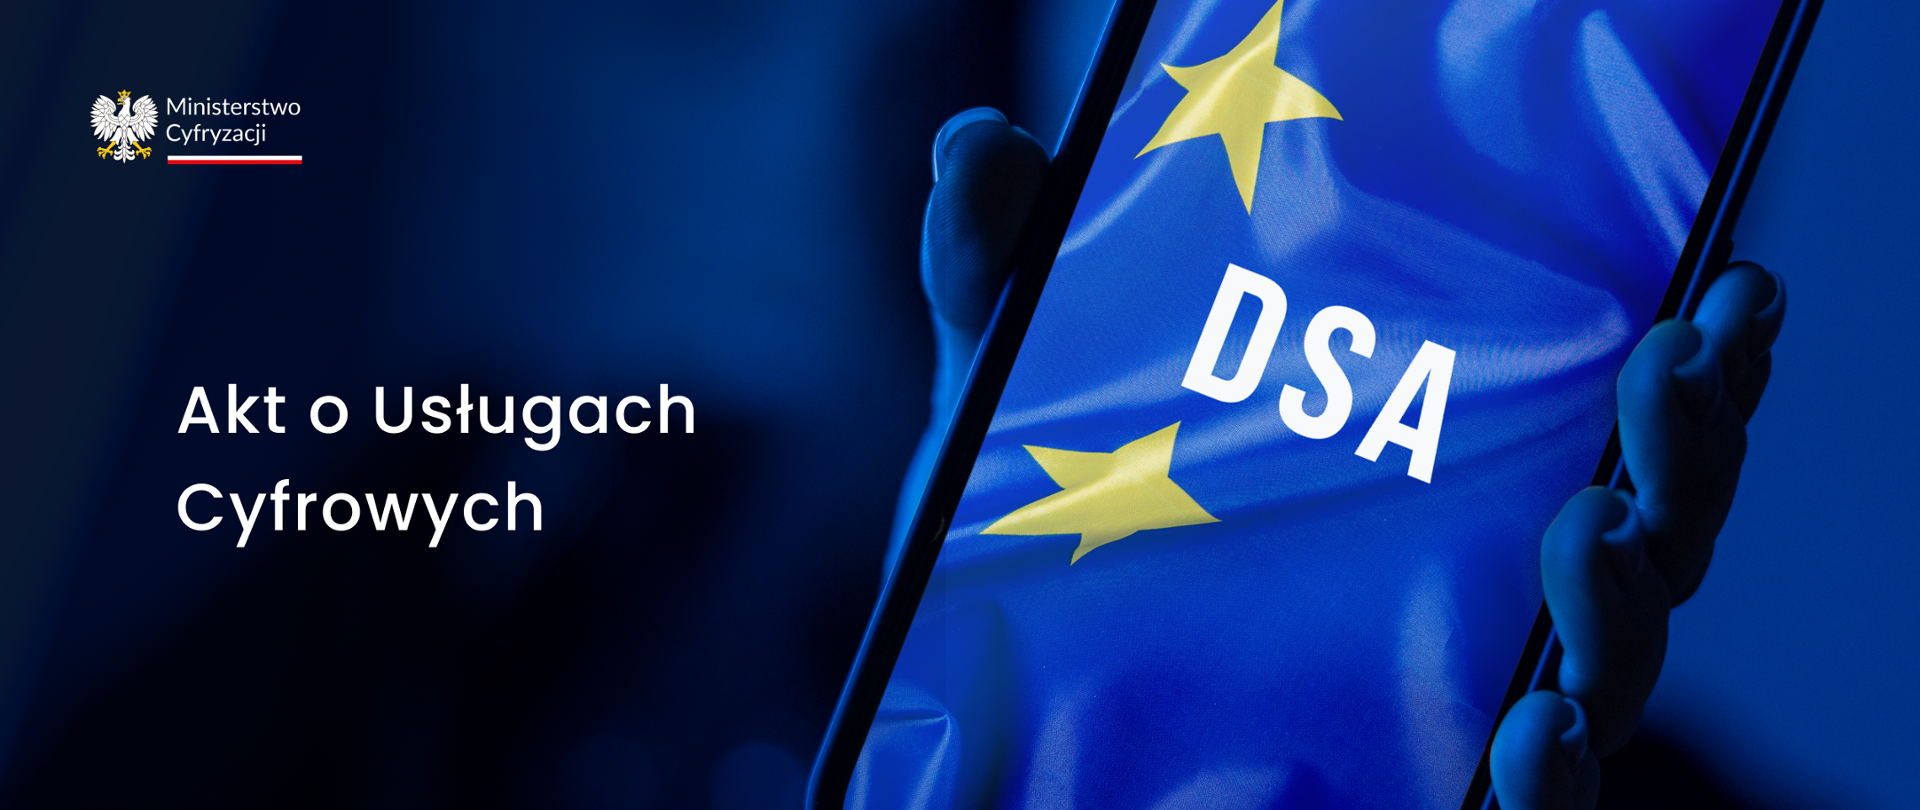 Na granatowym tle widnieje biały napis - Akt o usługach cyfrowych. W lewym górnym rogu logo Ministerstwa Cyfryzacji z orłem. Po prawej stronie na ekranie telefonu widać flagę Unii Europejskiej i skrót DSA. 